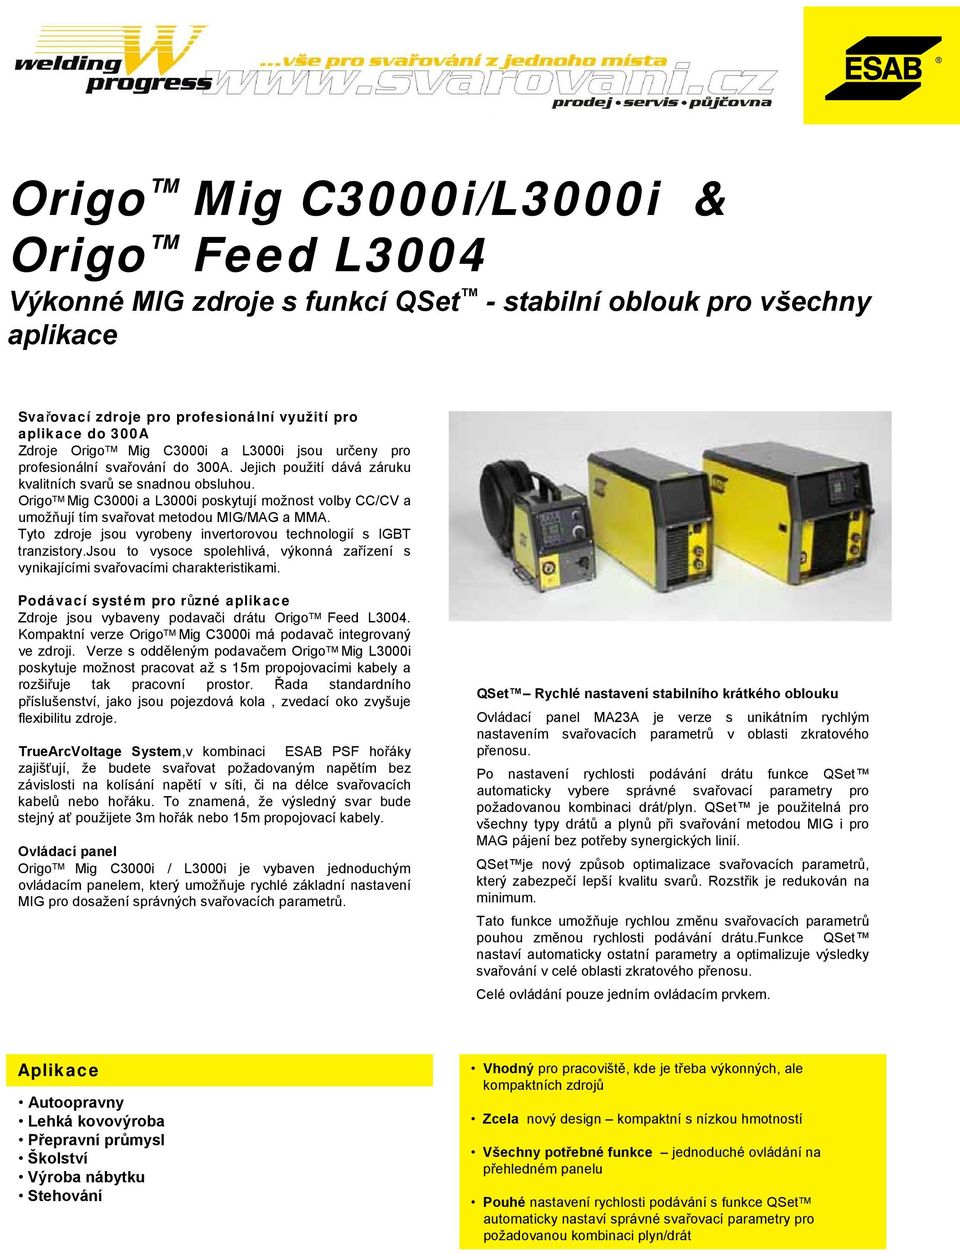 Origo TM Mig C3000i a L3000i poskytují možnost volby CC/CV a umožňují tím svařovat metodou MIG/MAG a MMA. Tyto zdroje jsou vyrobeny invertorovou technologií s IGBT tranzistory.